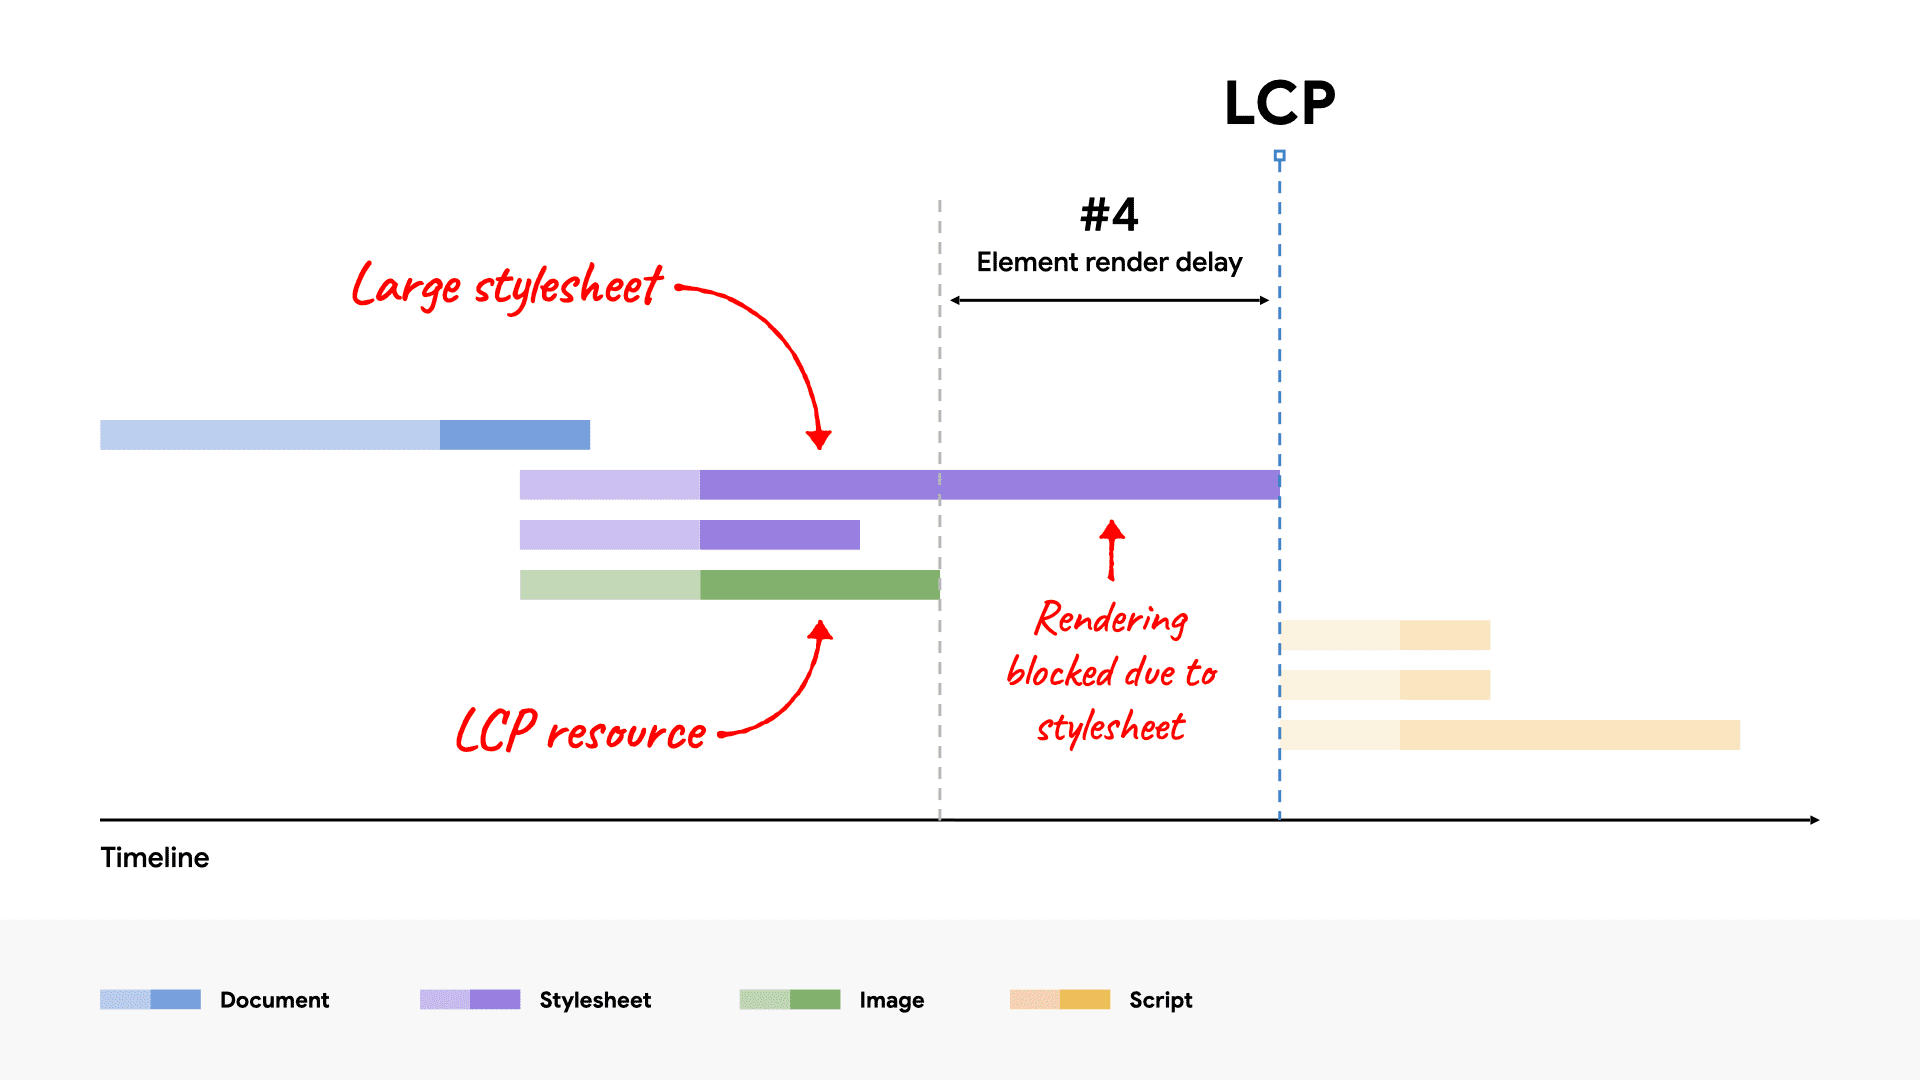 Ein Netzwerk-Wasserfalldiagramm, das eine große CSS-Datei zeigt, die das Rendern des LCP-Elements blockiert, da das Laden länger dauert als die LCP-Ressource